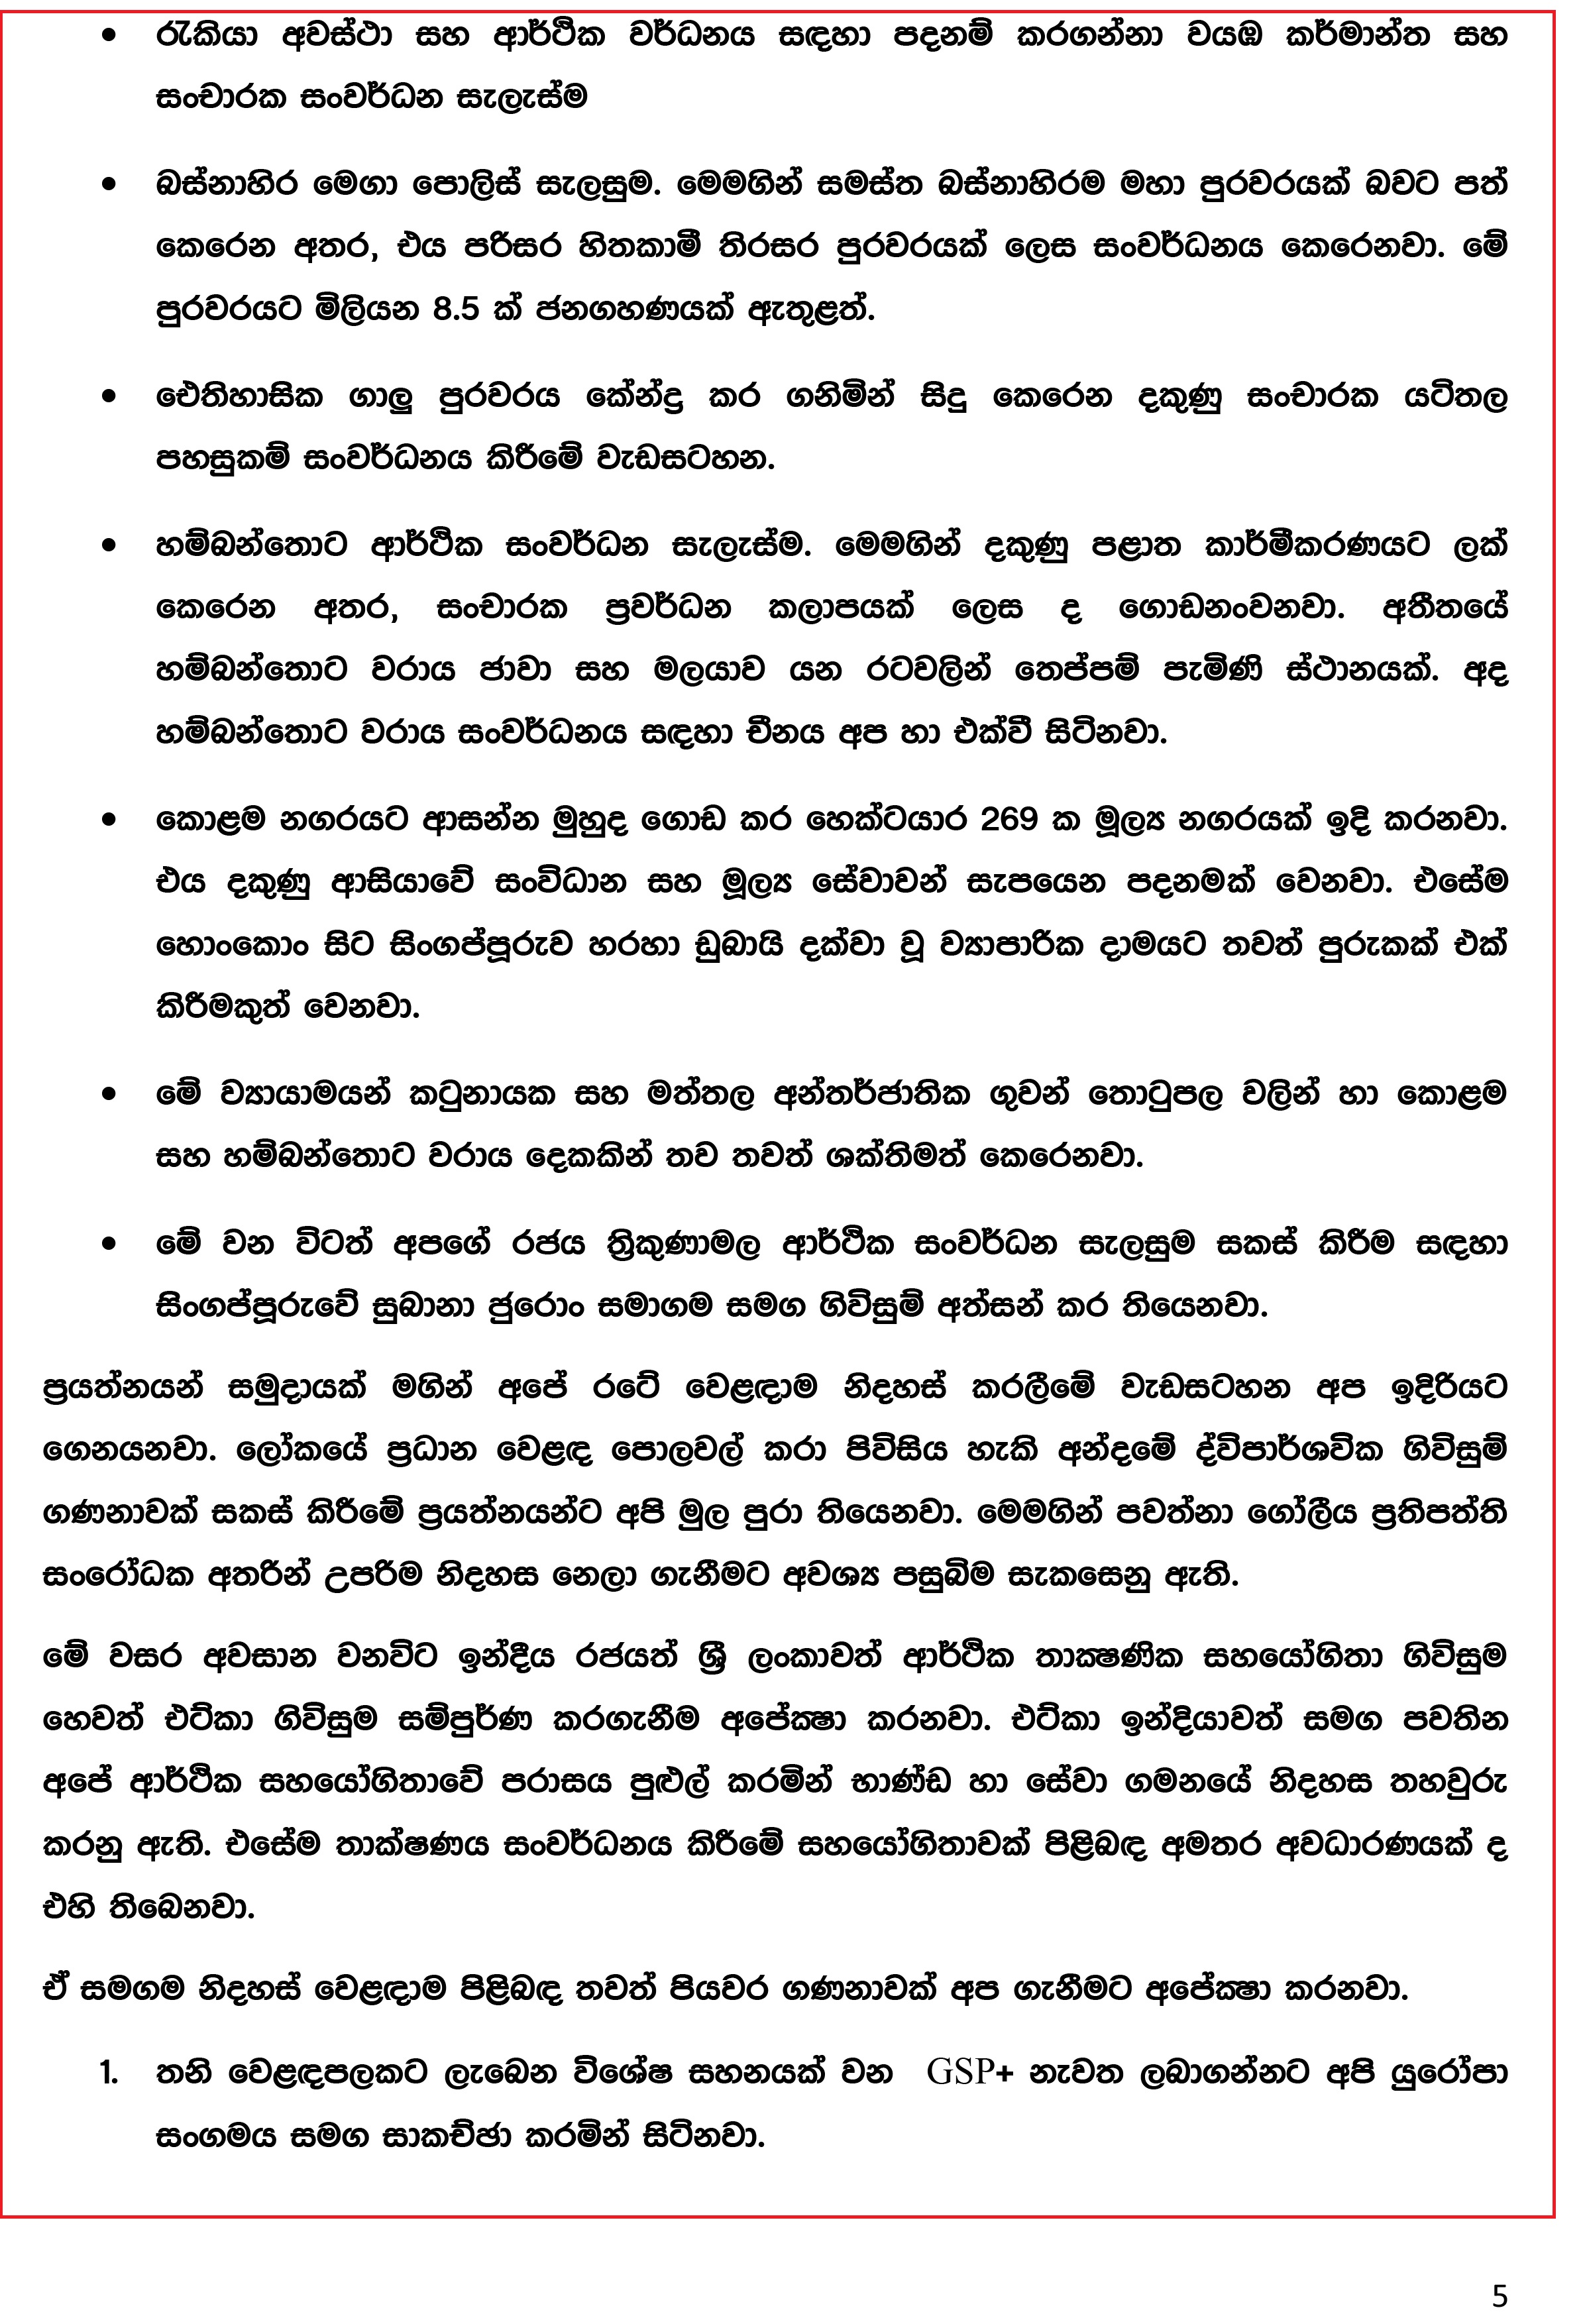 Press Release (1) - August 02_2016 (Sinhala)-5